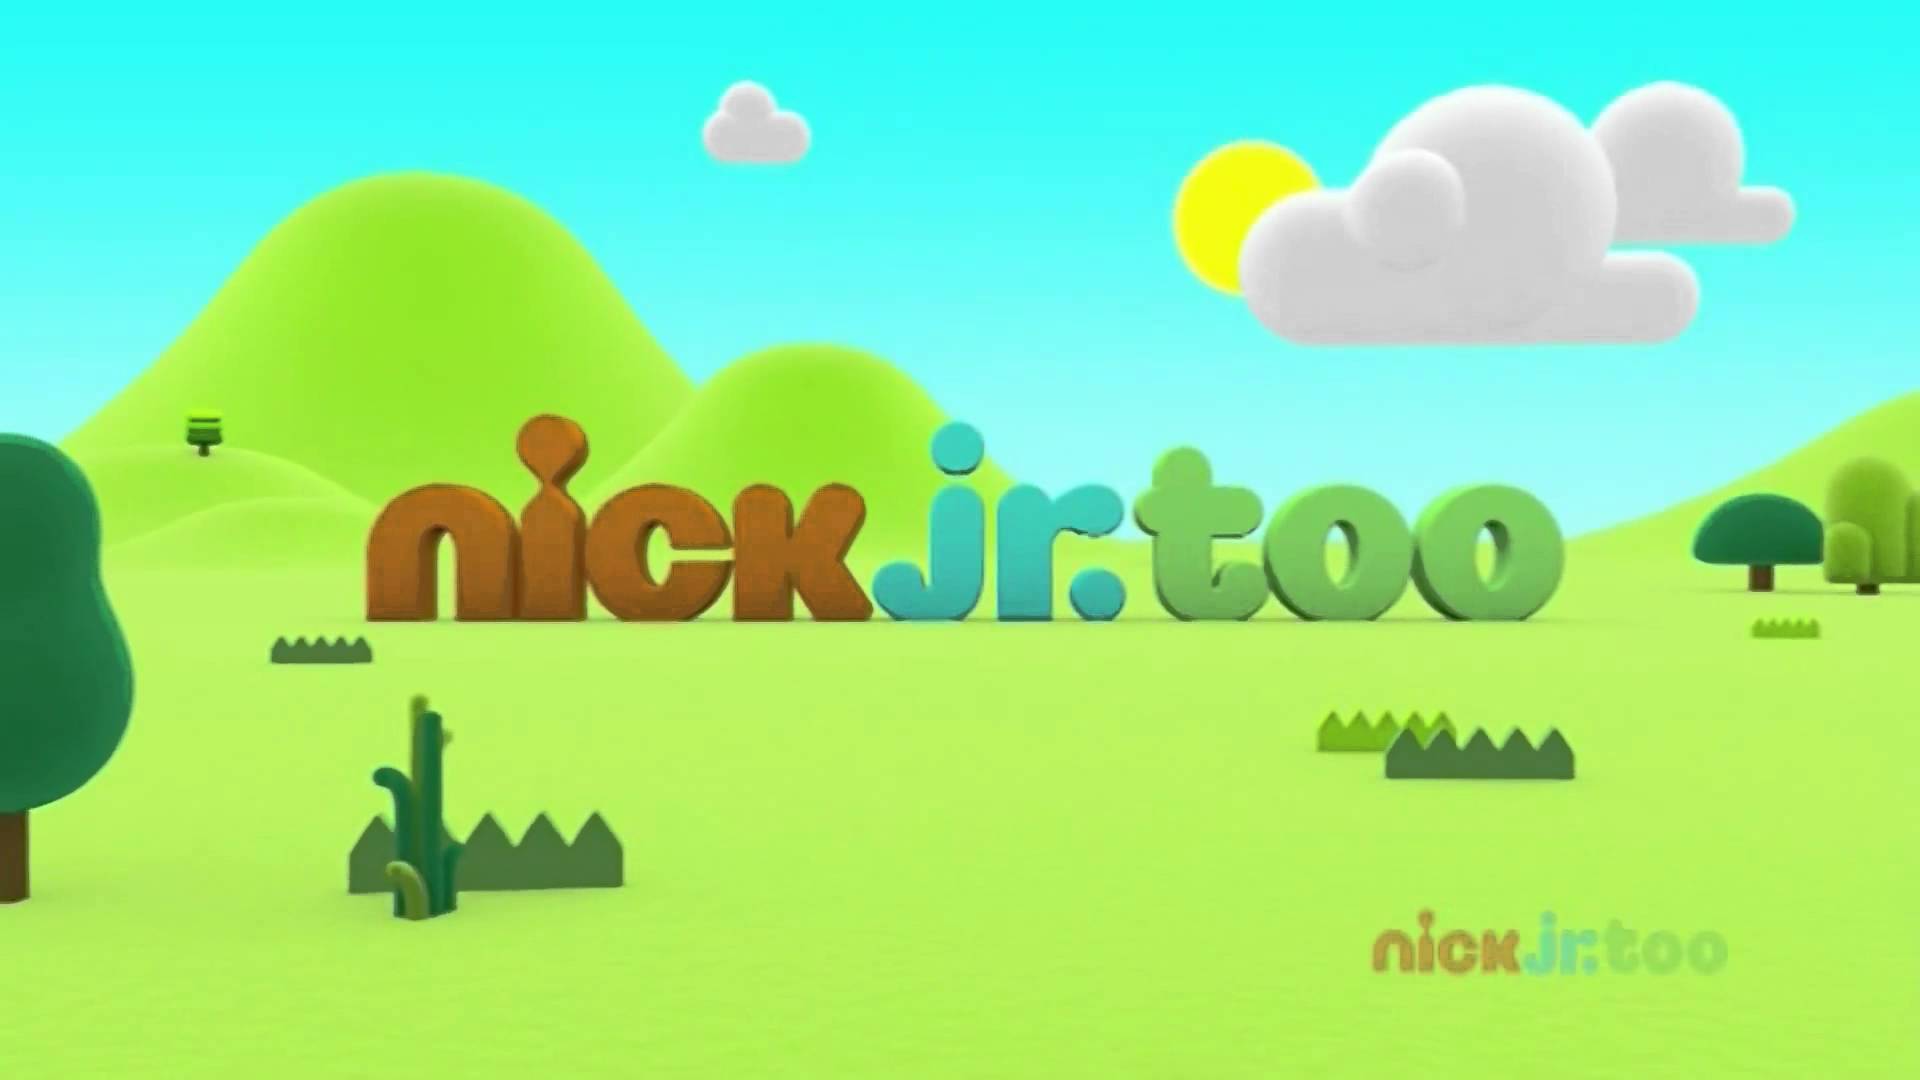 Nick Jr Hd Logo